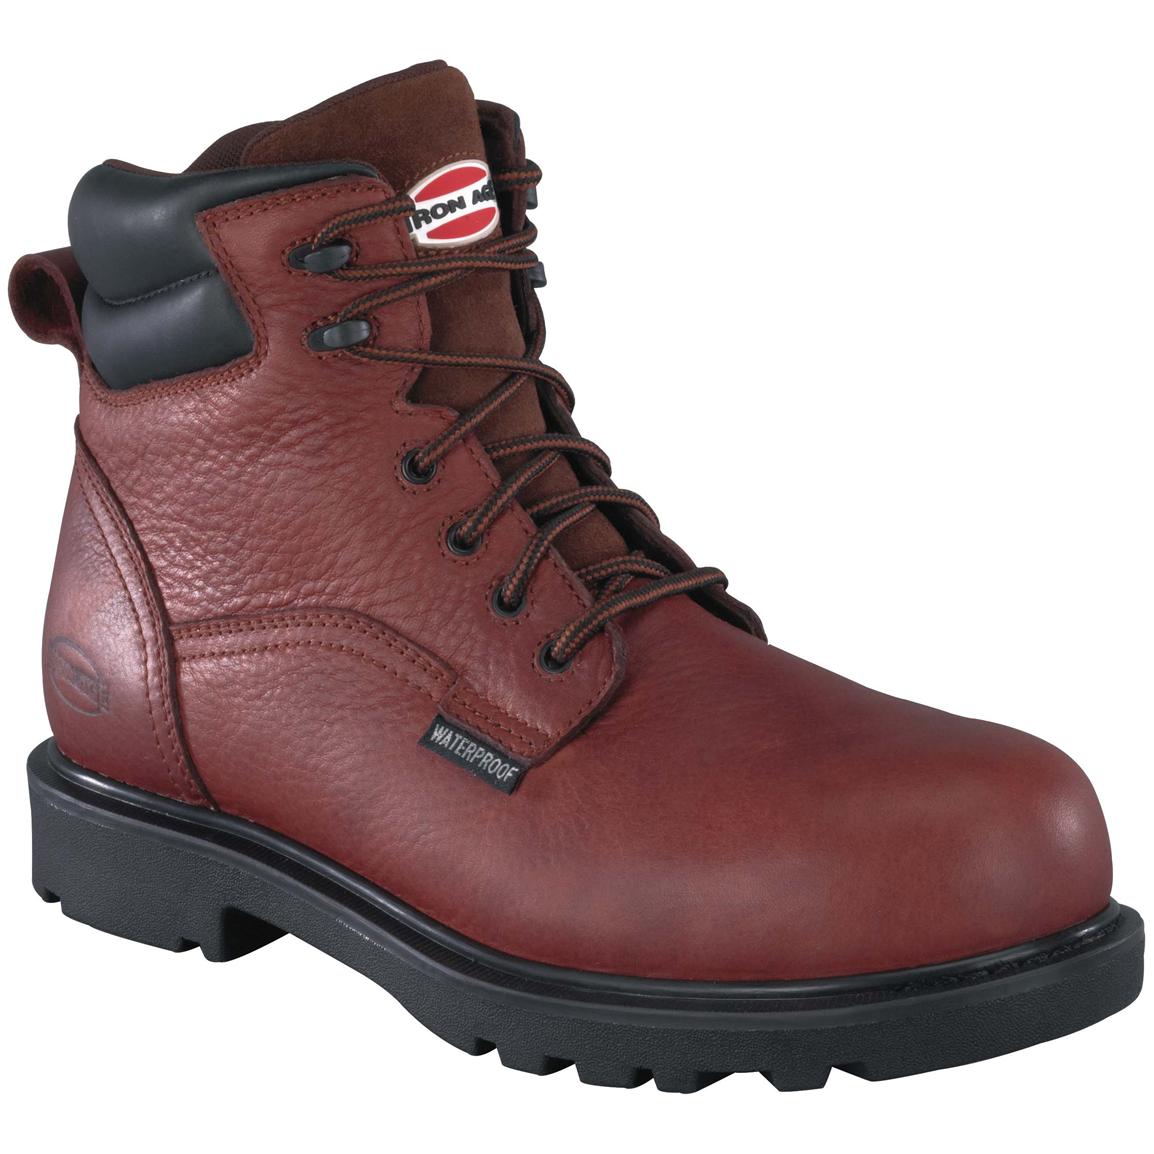 Men's Iron Age® 6 inch Hauler Waterproof Composite Toe Work Boots, Brown